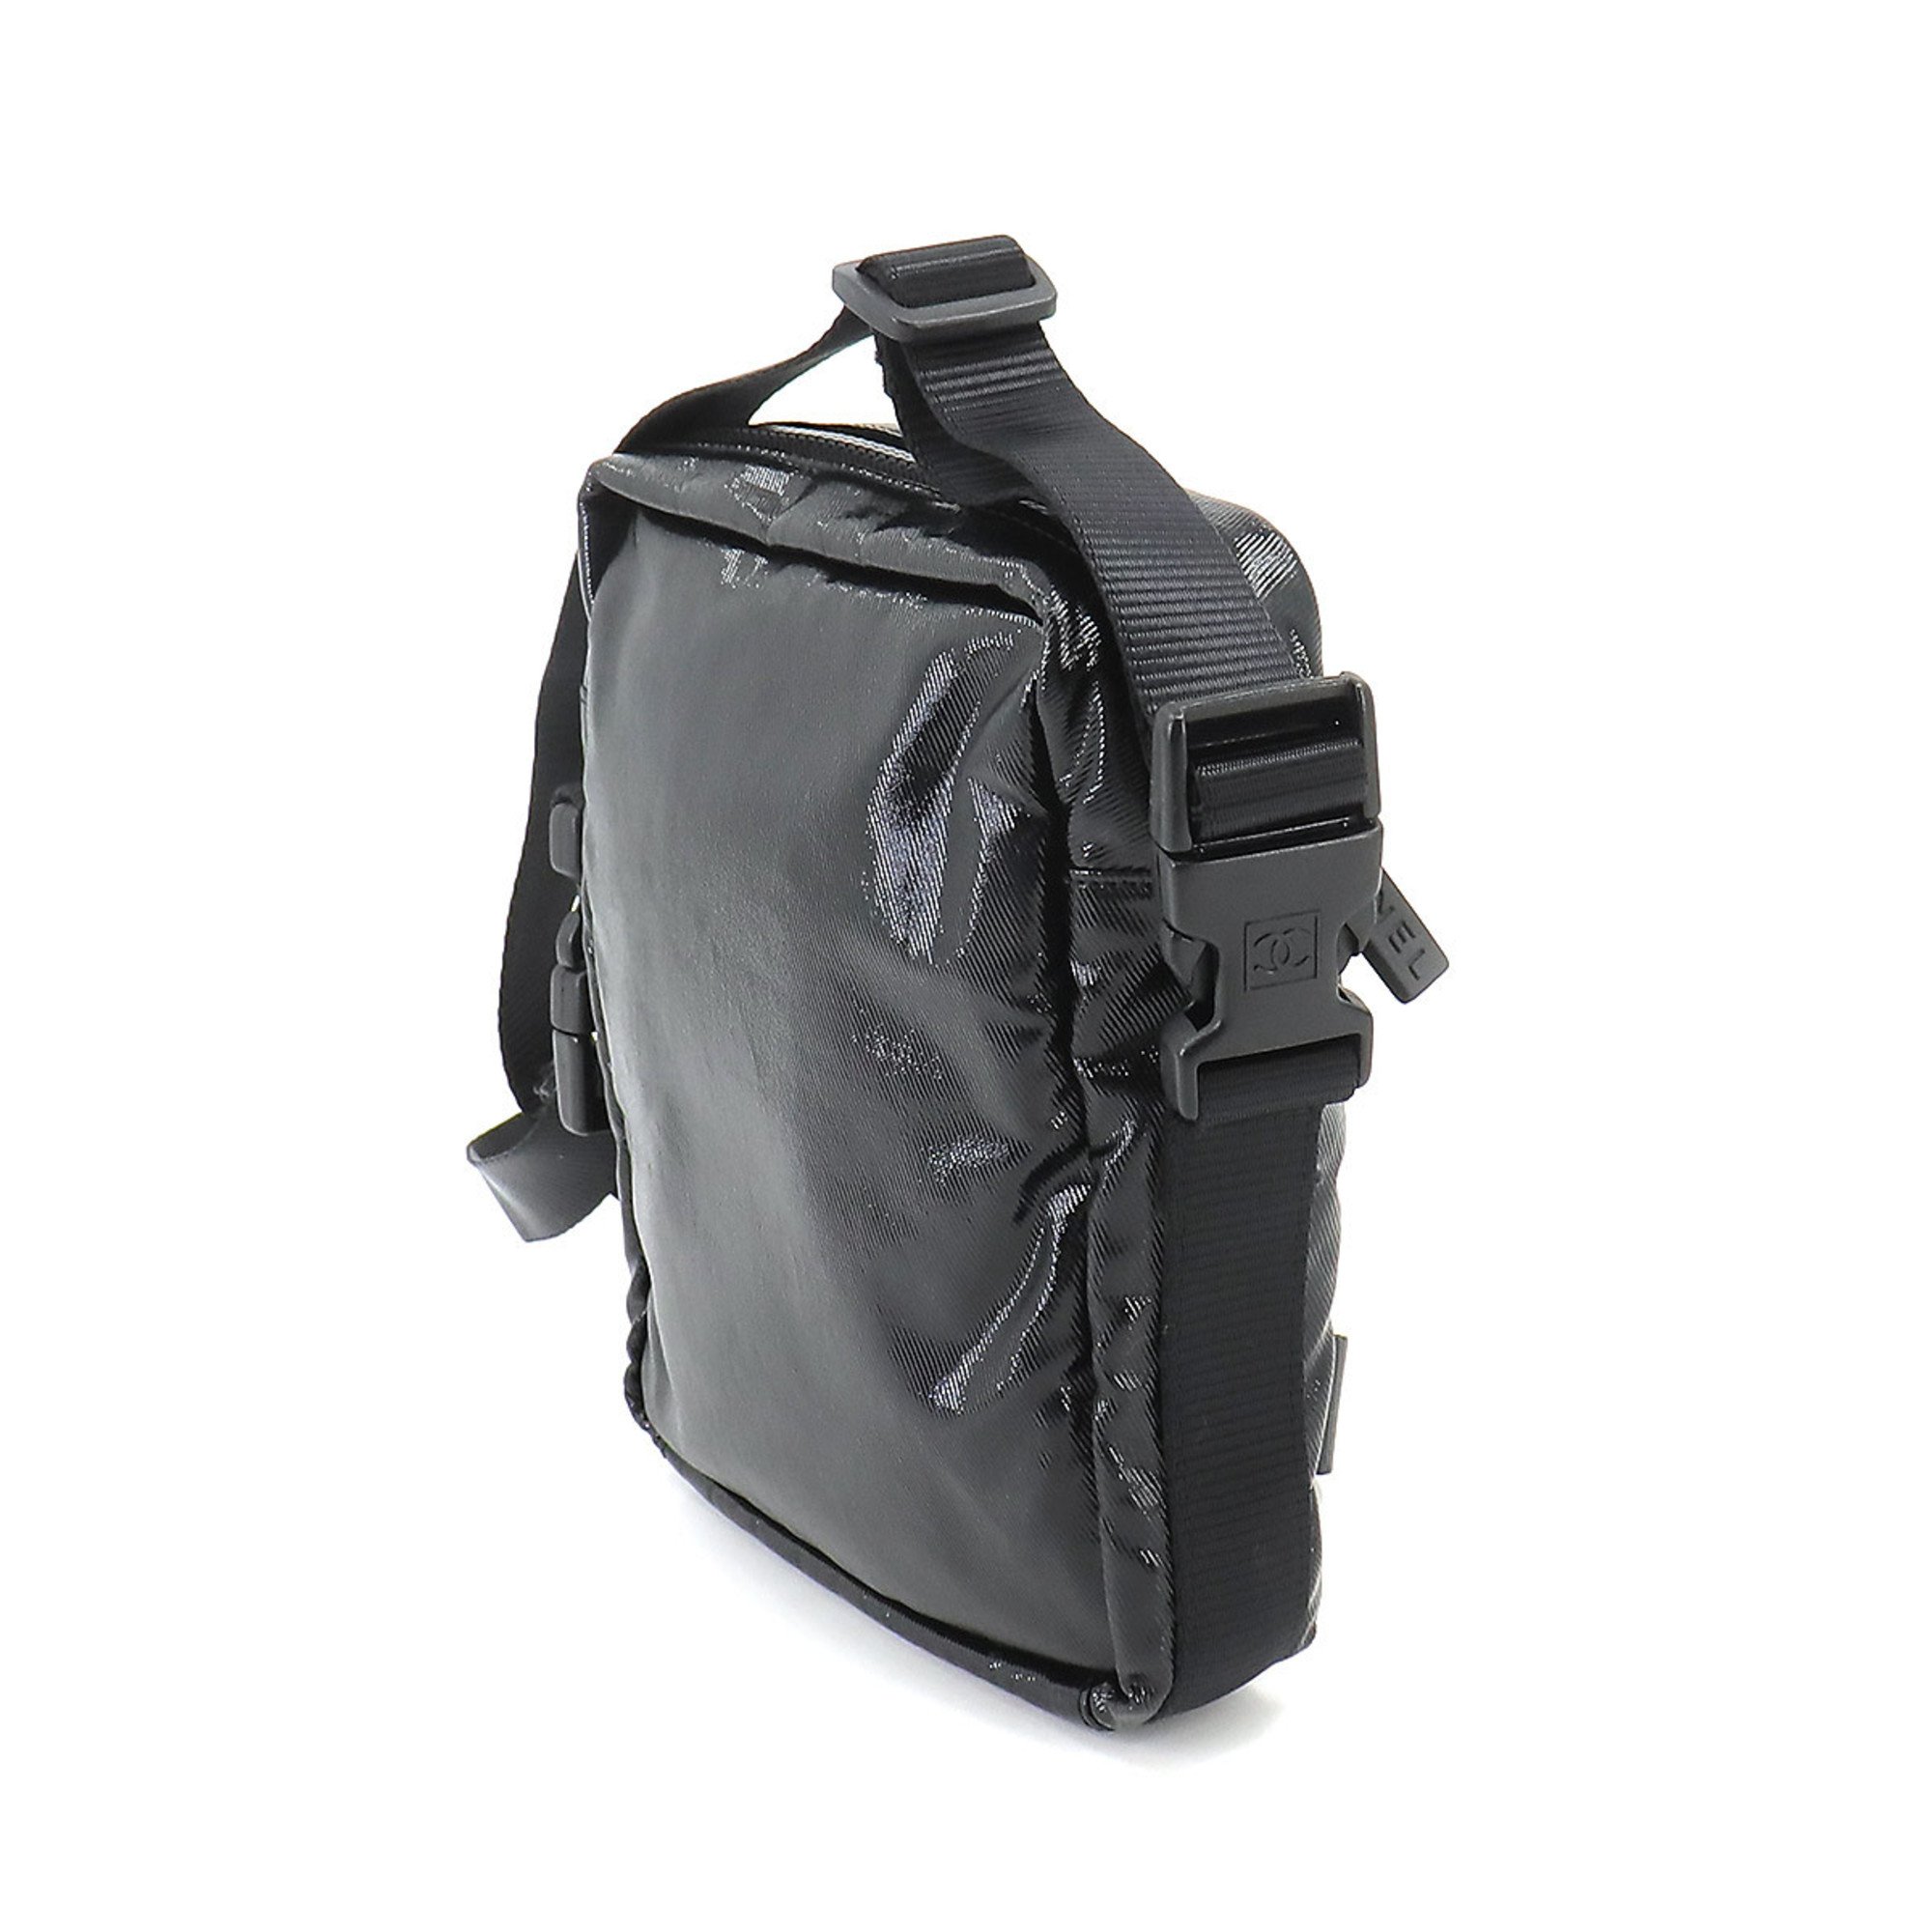 CHANEL Sportsline Shoulder Bag Nylon Black Silver Hardware